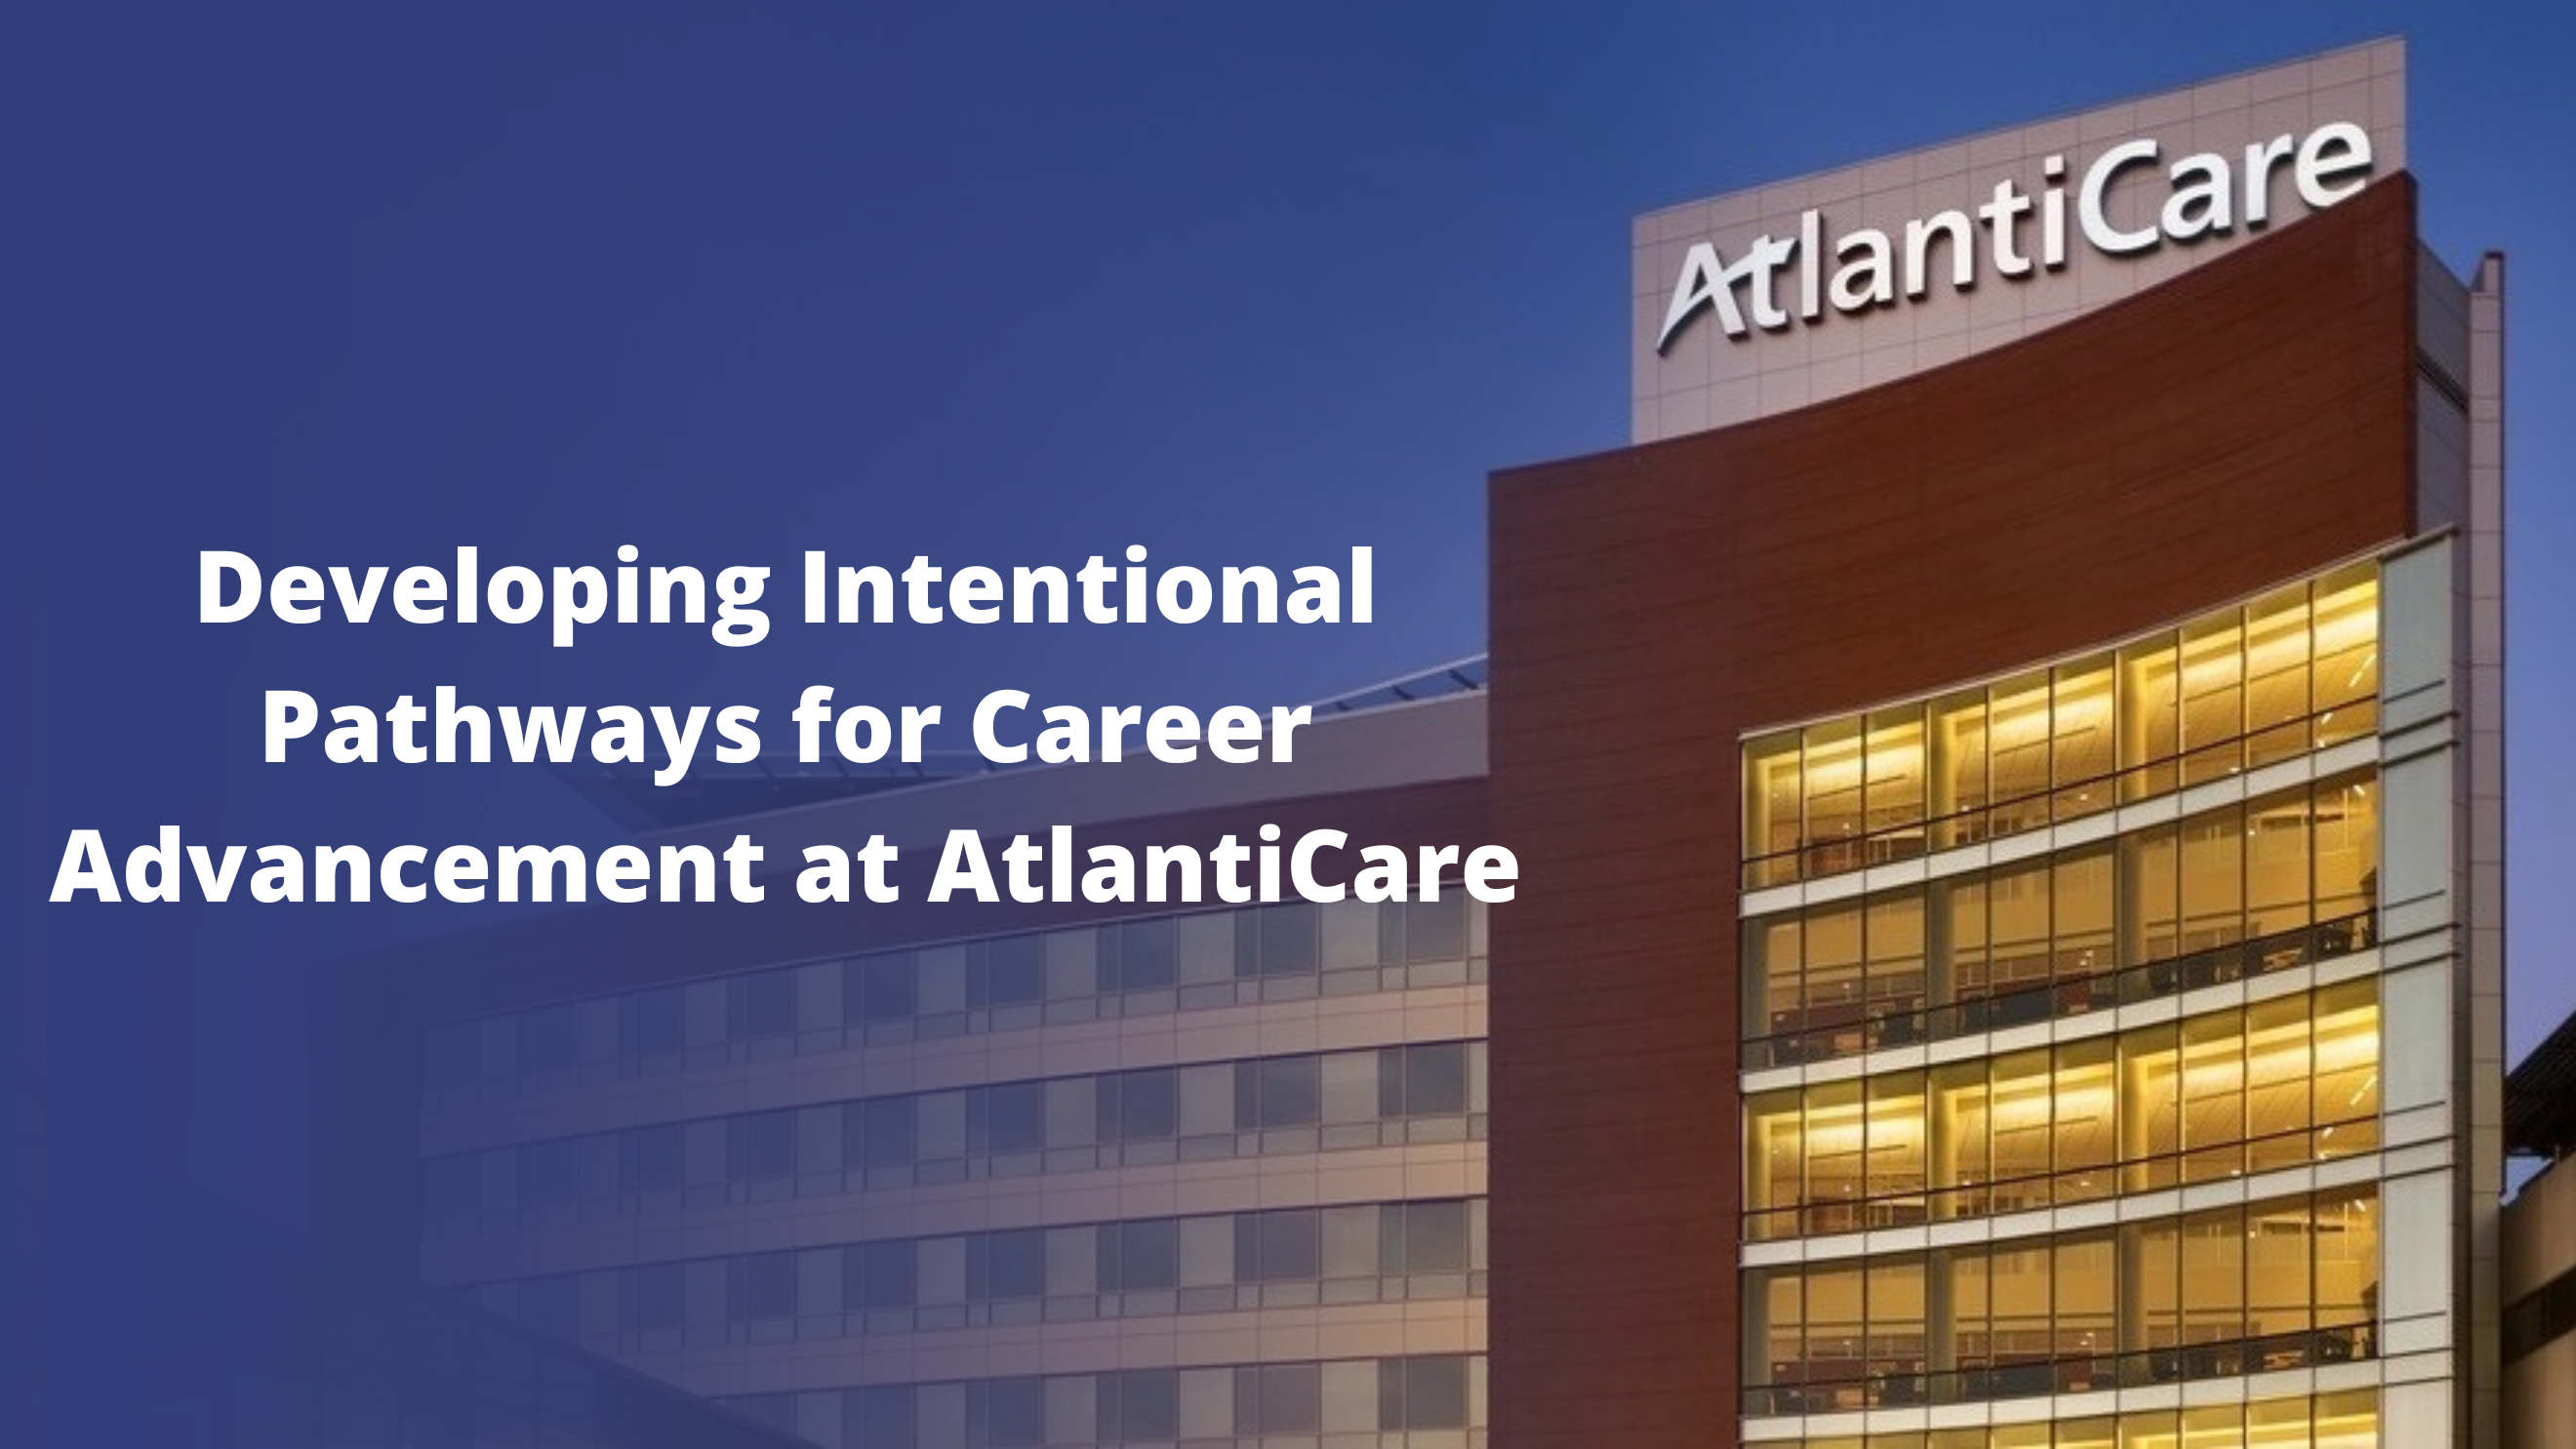 AtlantiCare Hospital